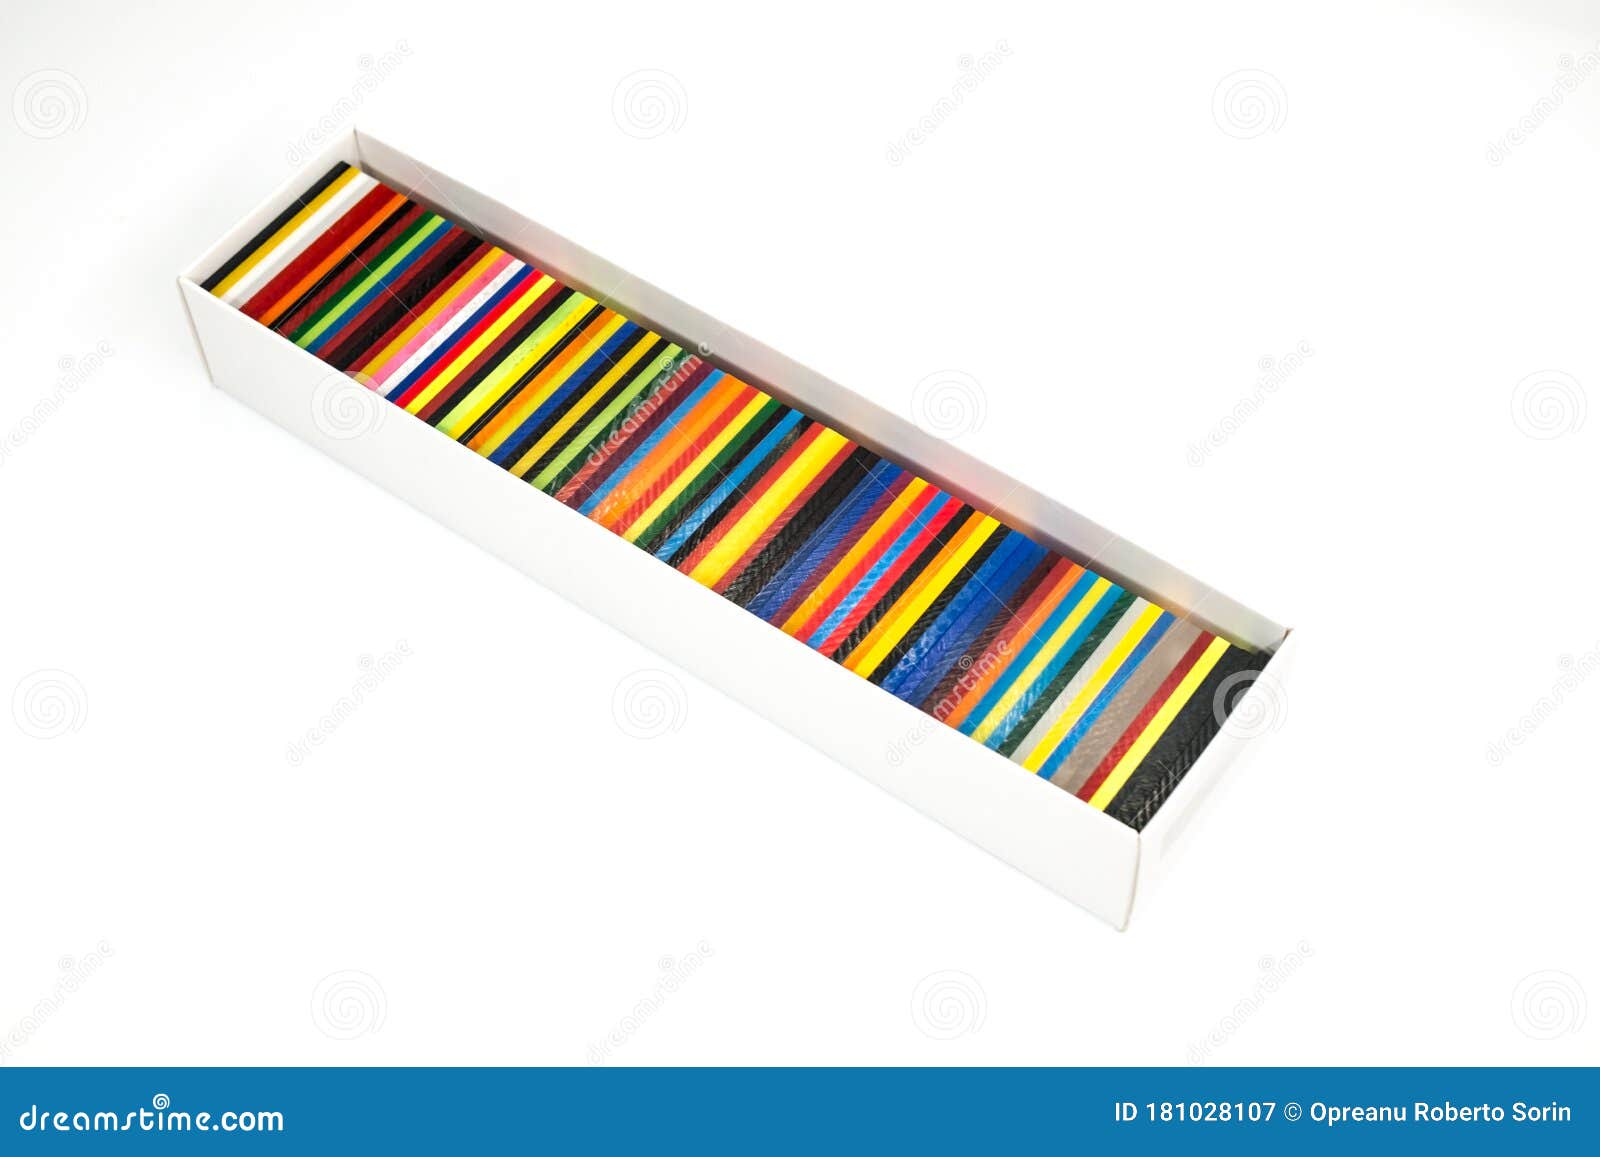 white box with colored plexiglas plates